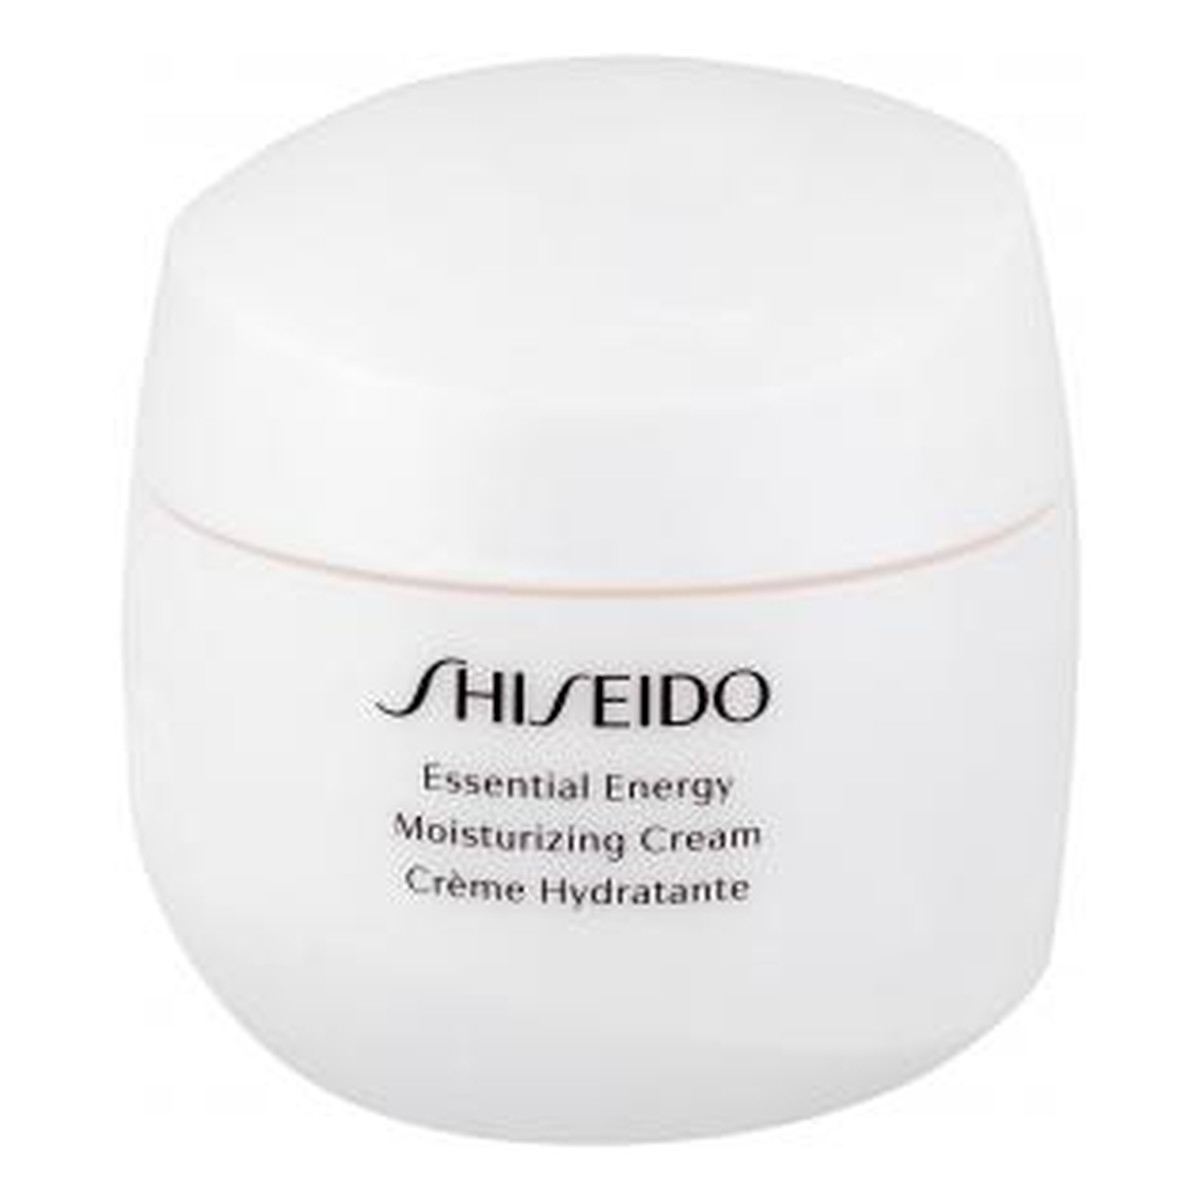 Shiseido Essential Energy Moisturizing Cream krem nawilżający 50ml